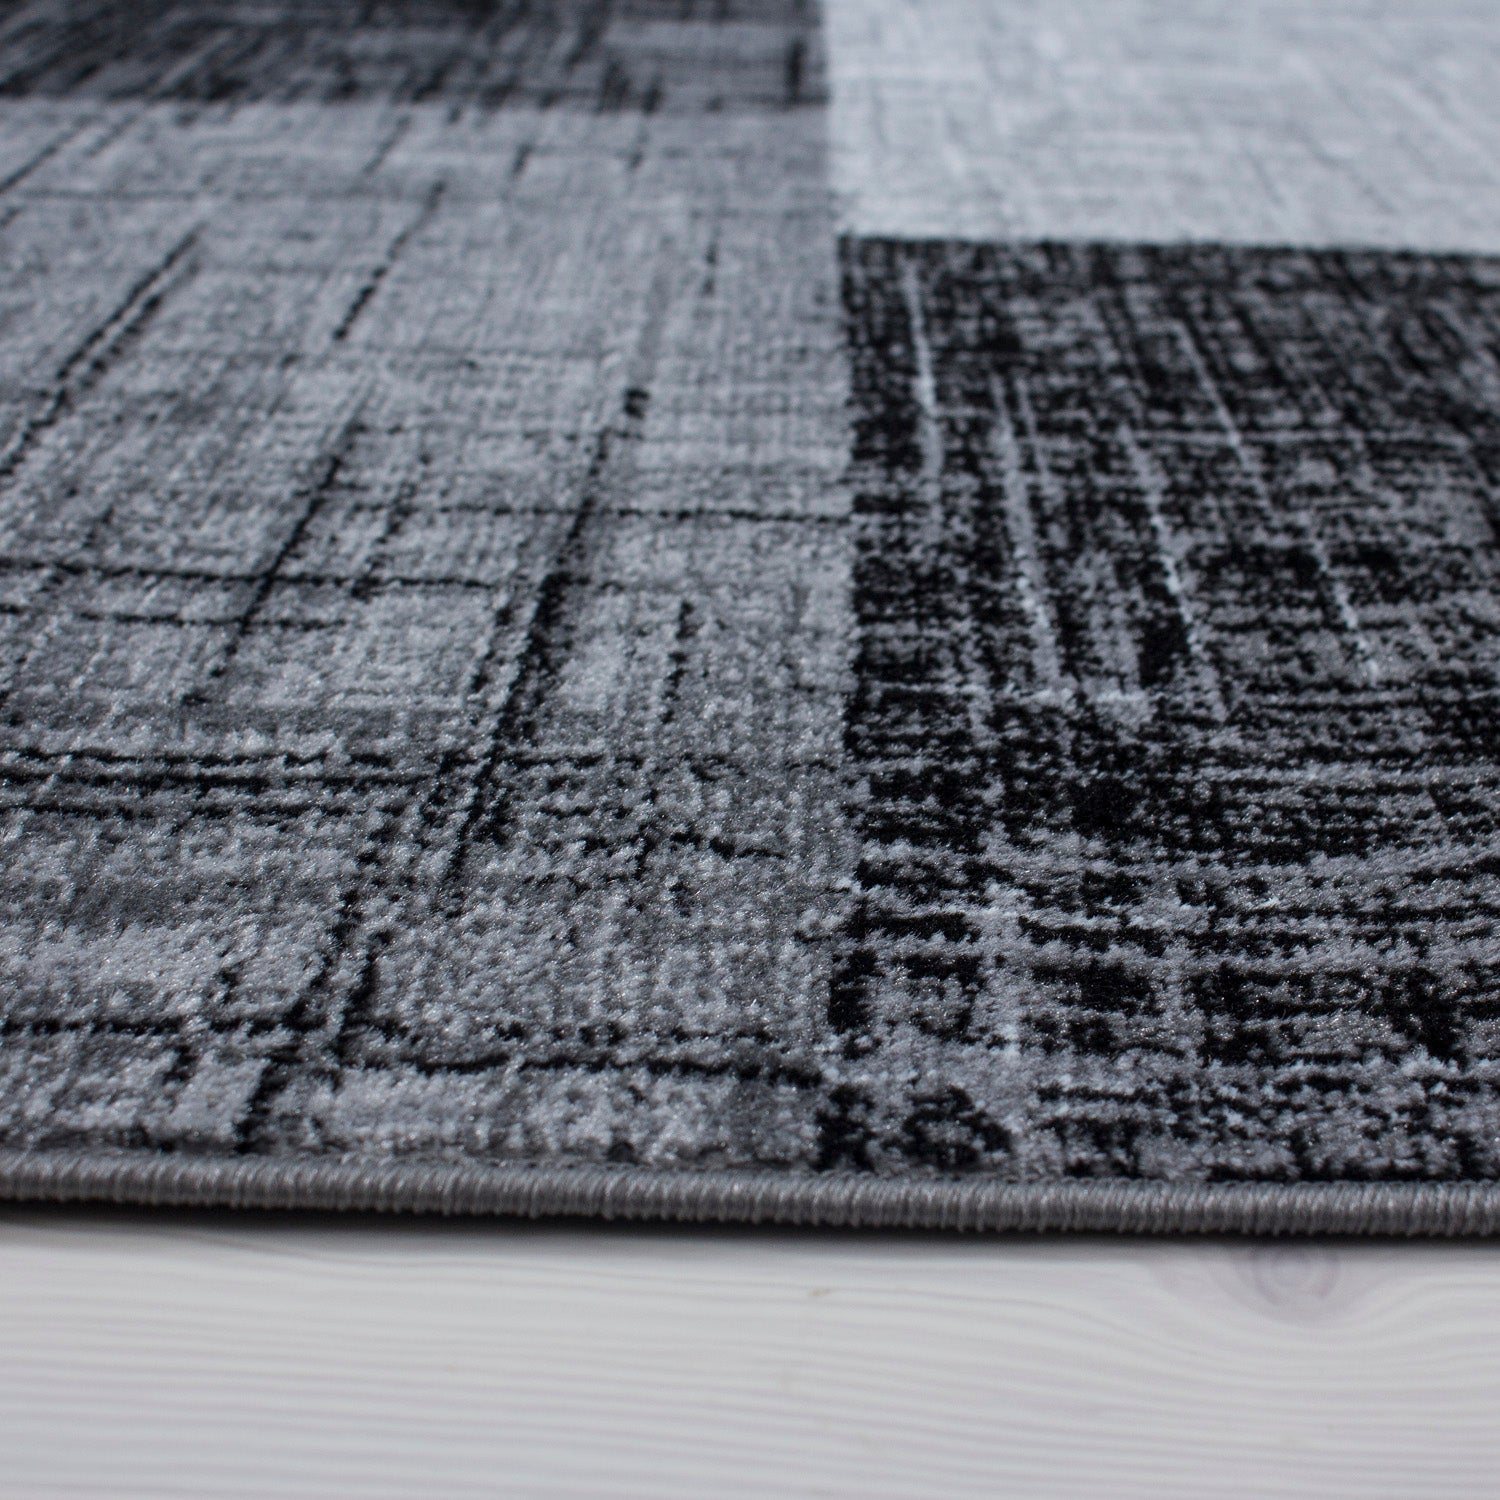 Teppich Bettumrandung 3 Teile Läufer Kurzflor Set Grau Schwarz meliert